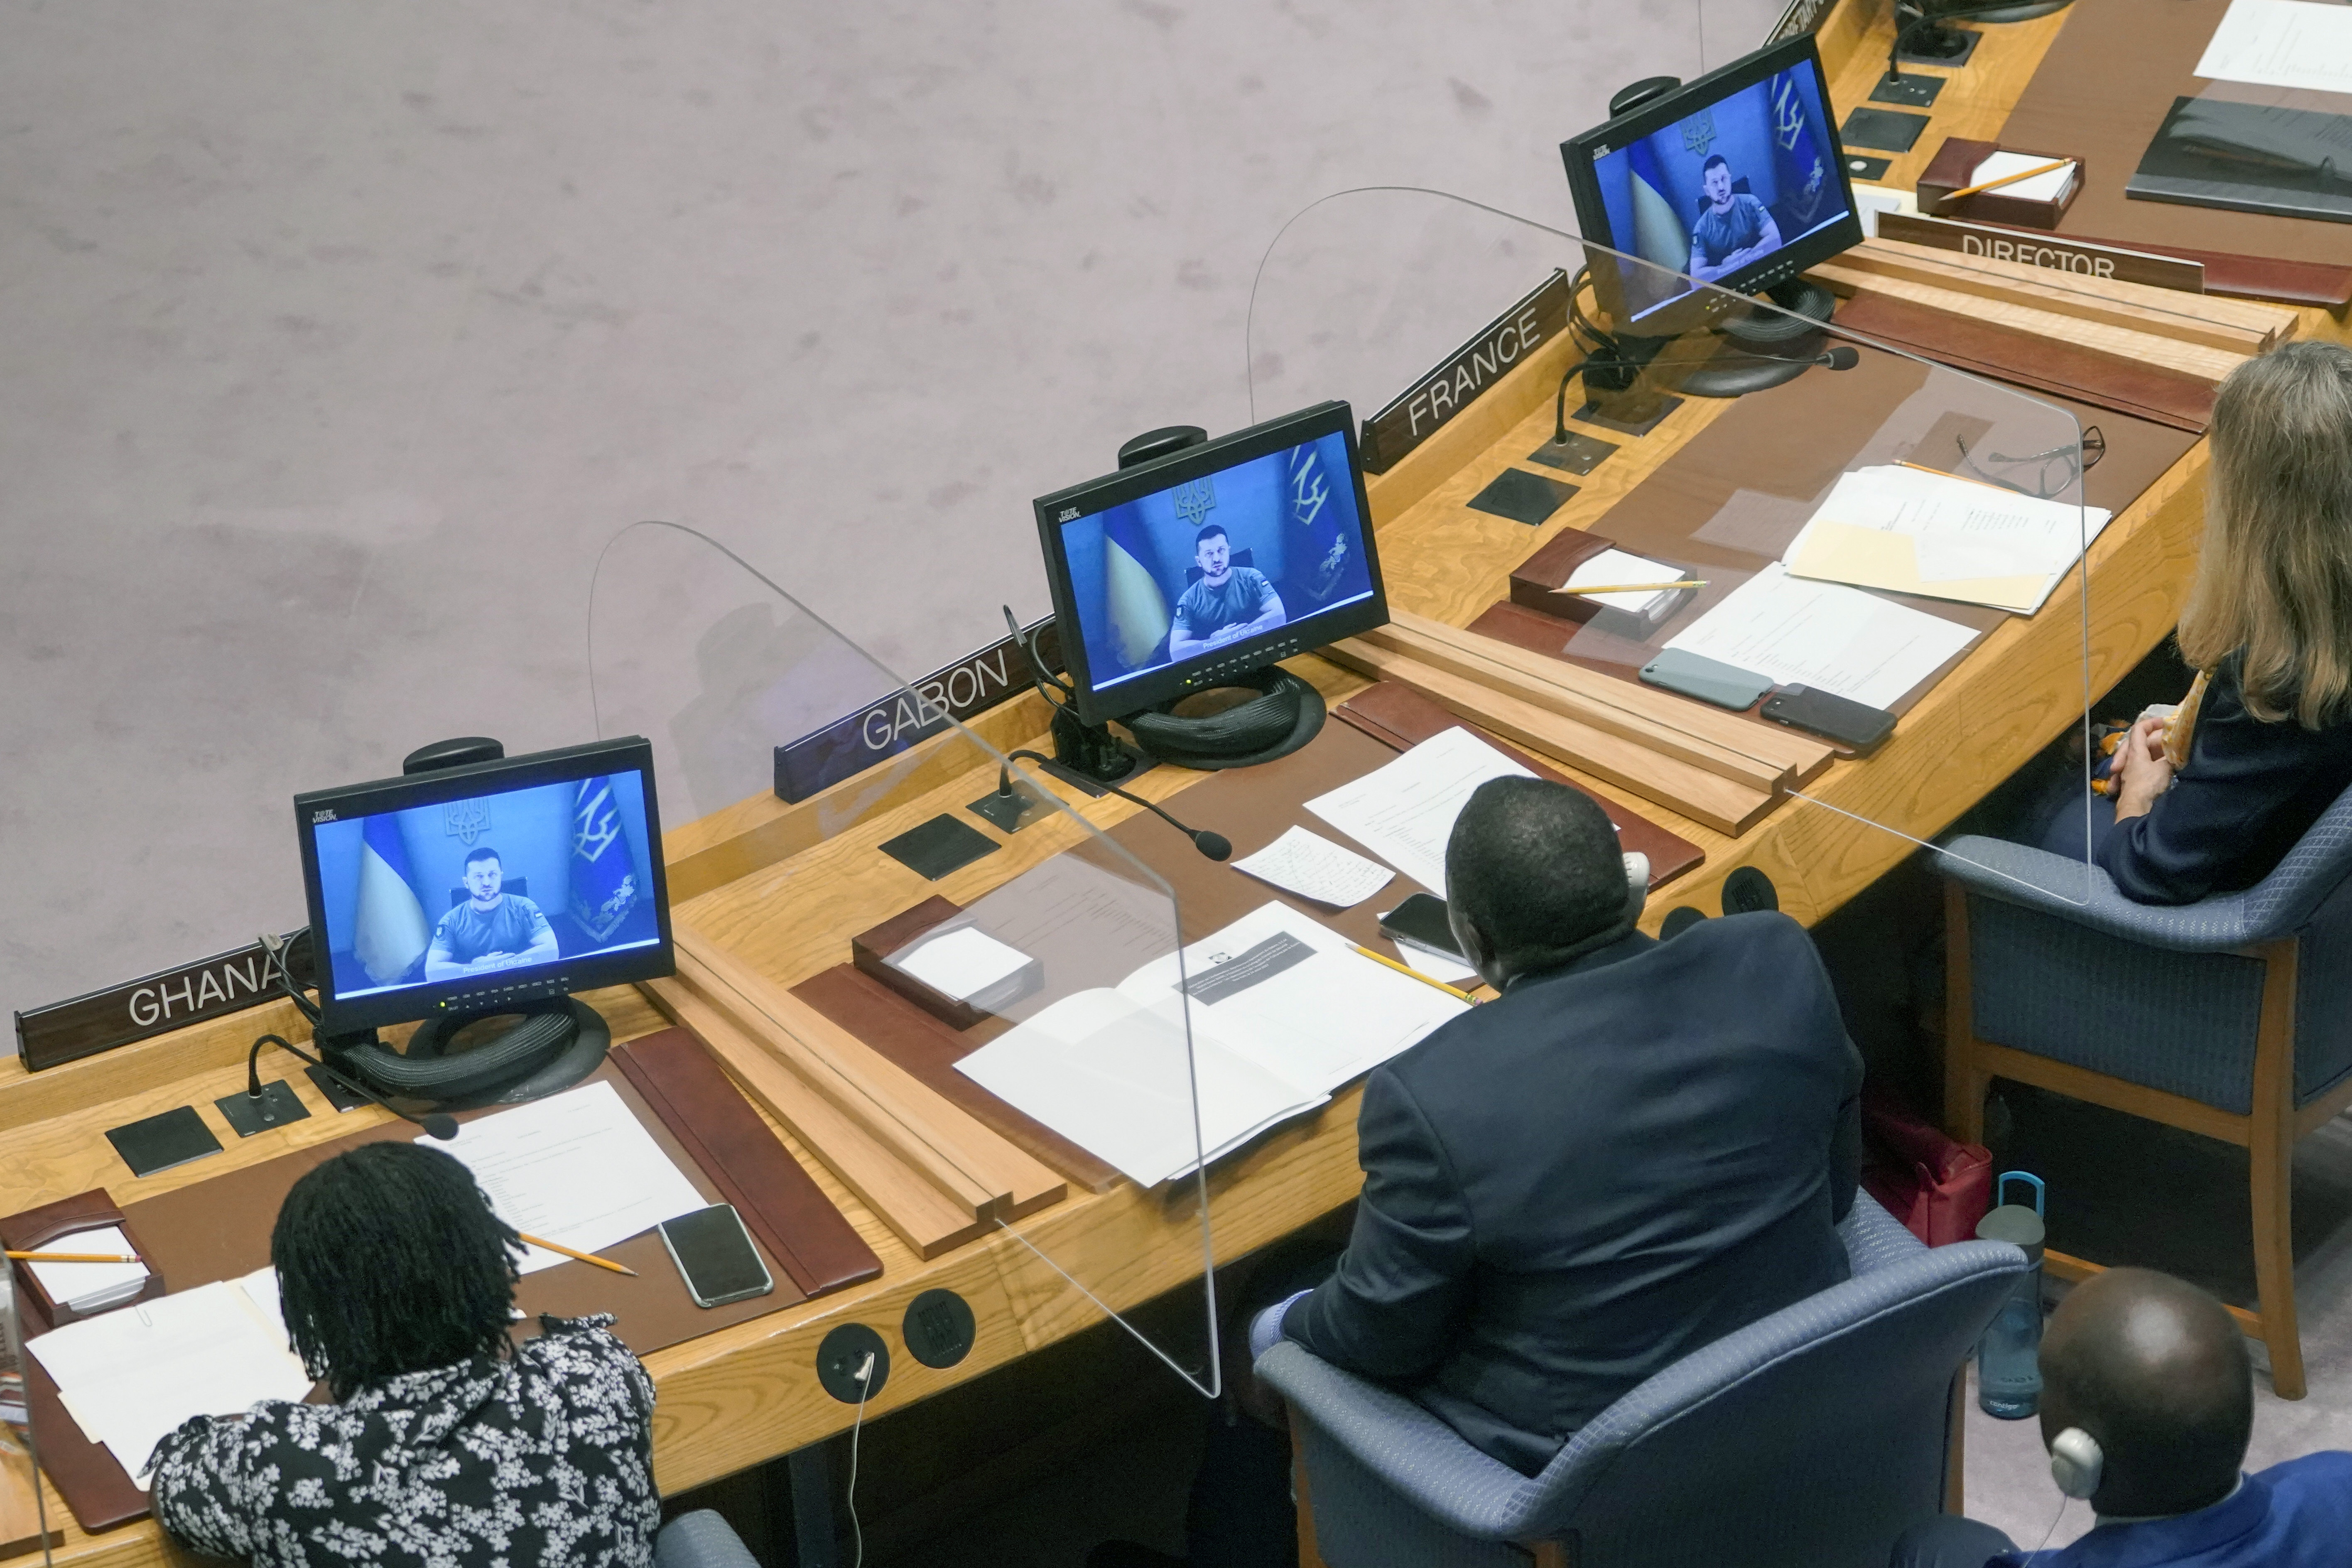 ARCHIVO - El presidente de Ucrania, Volodymyr Zelenskyy, se dirige al Consejo de Seguridad a través de un enlace de video durante una reunión sobre amenazas a la paz y la seguridad internacionales, el 24 de agosto de 2022, en la sede de las Naciones Unidas. (Foto AP/Mary Altaffer, archivo)

